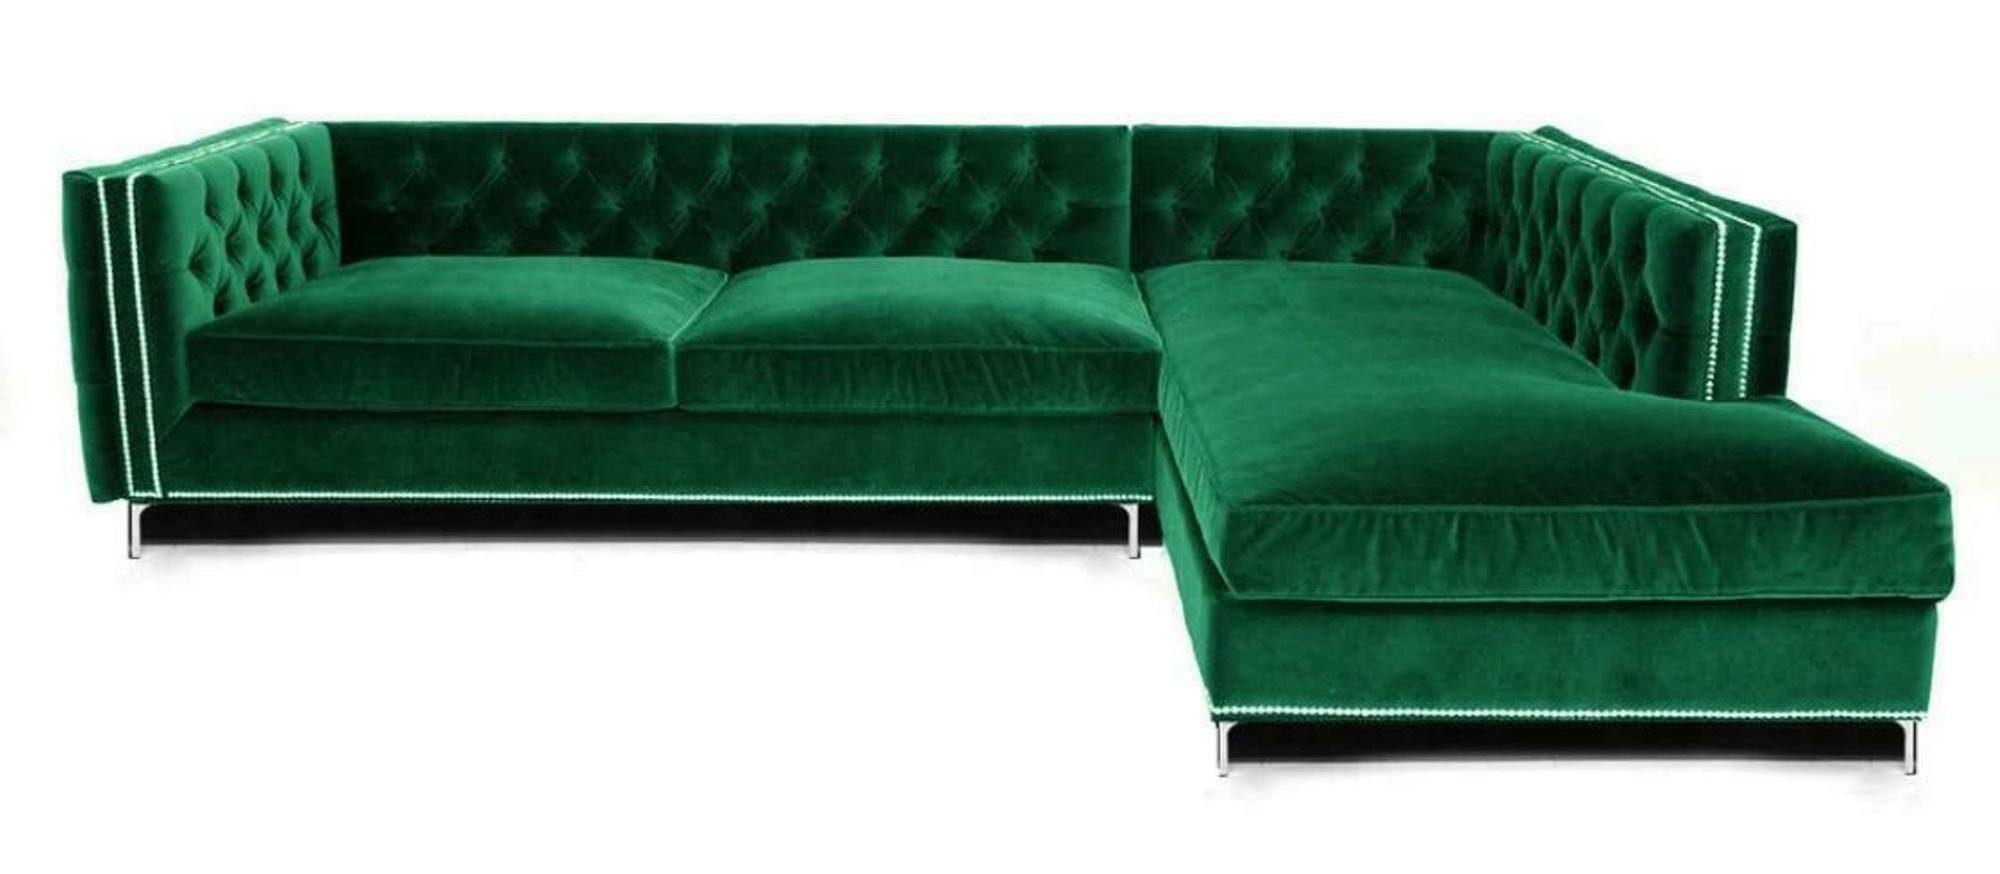 JVmoebel Ecksofa Luxriöse Blaue L-Form Couch modernes Ecksofa Polstermöbel Neu, Made in Europe Grün